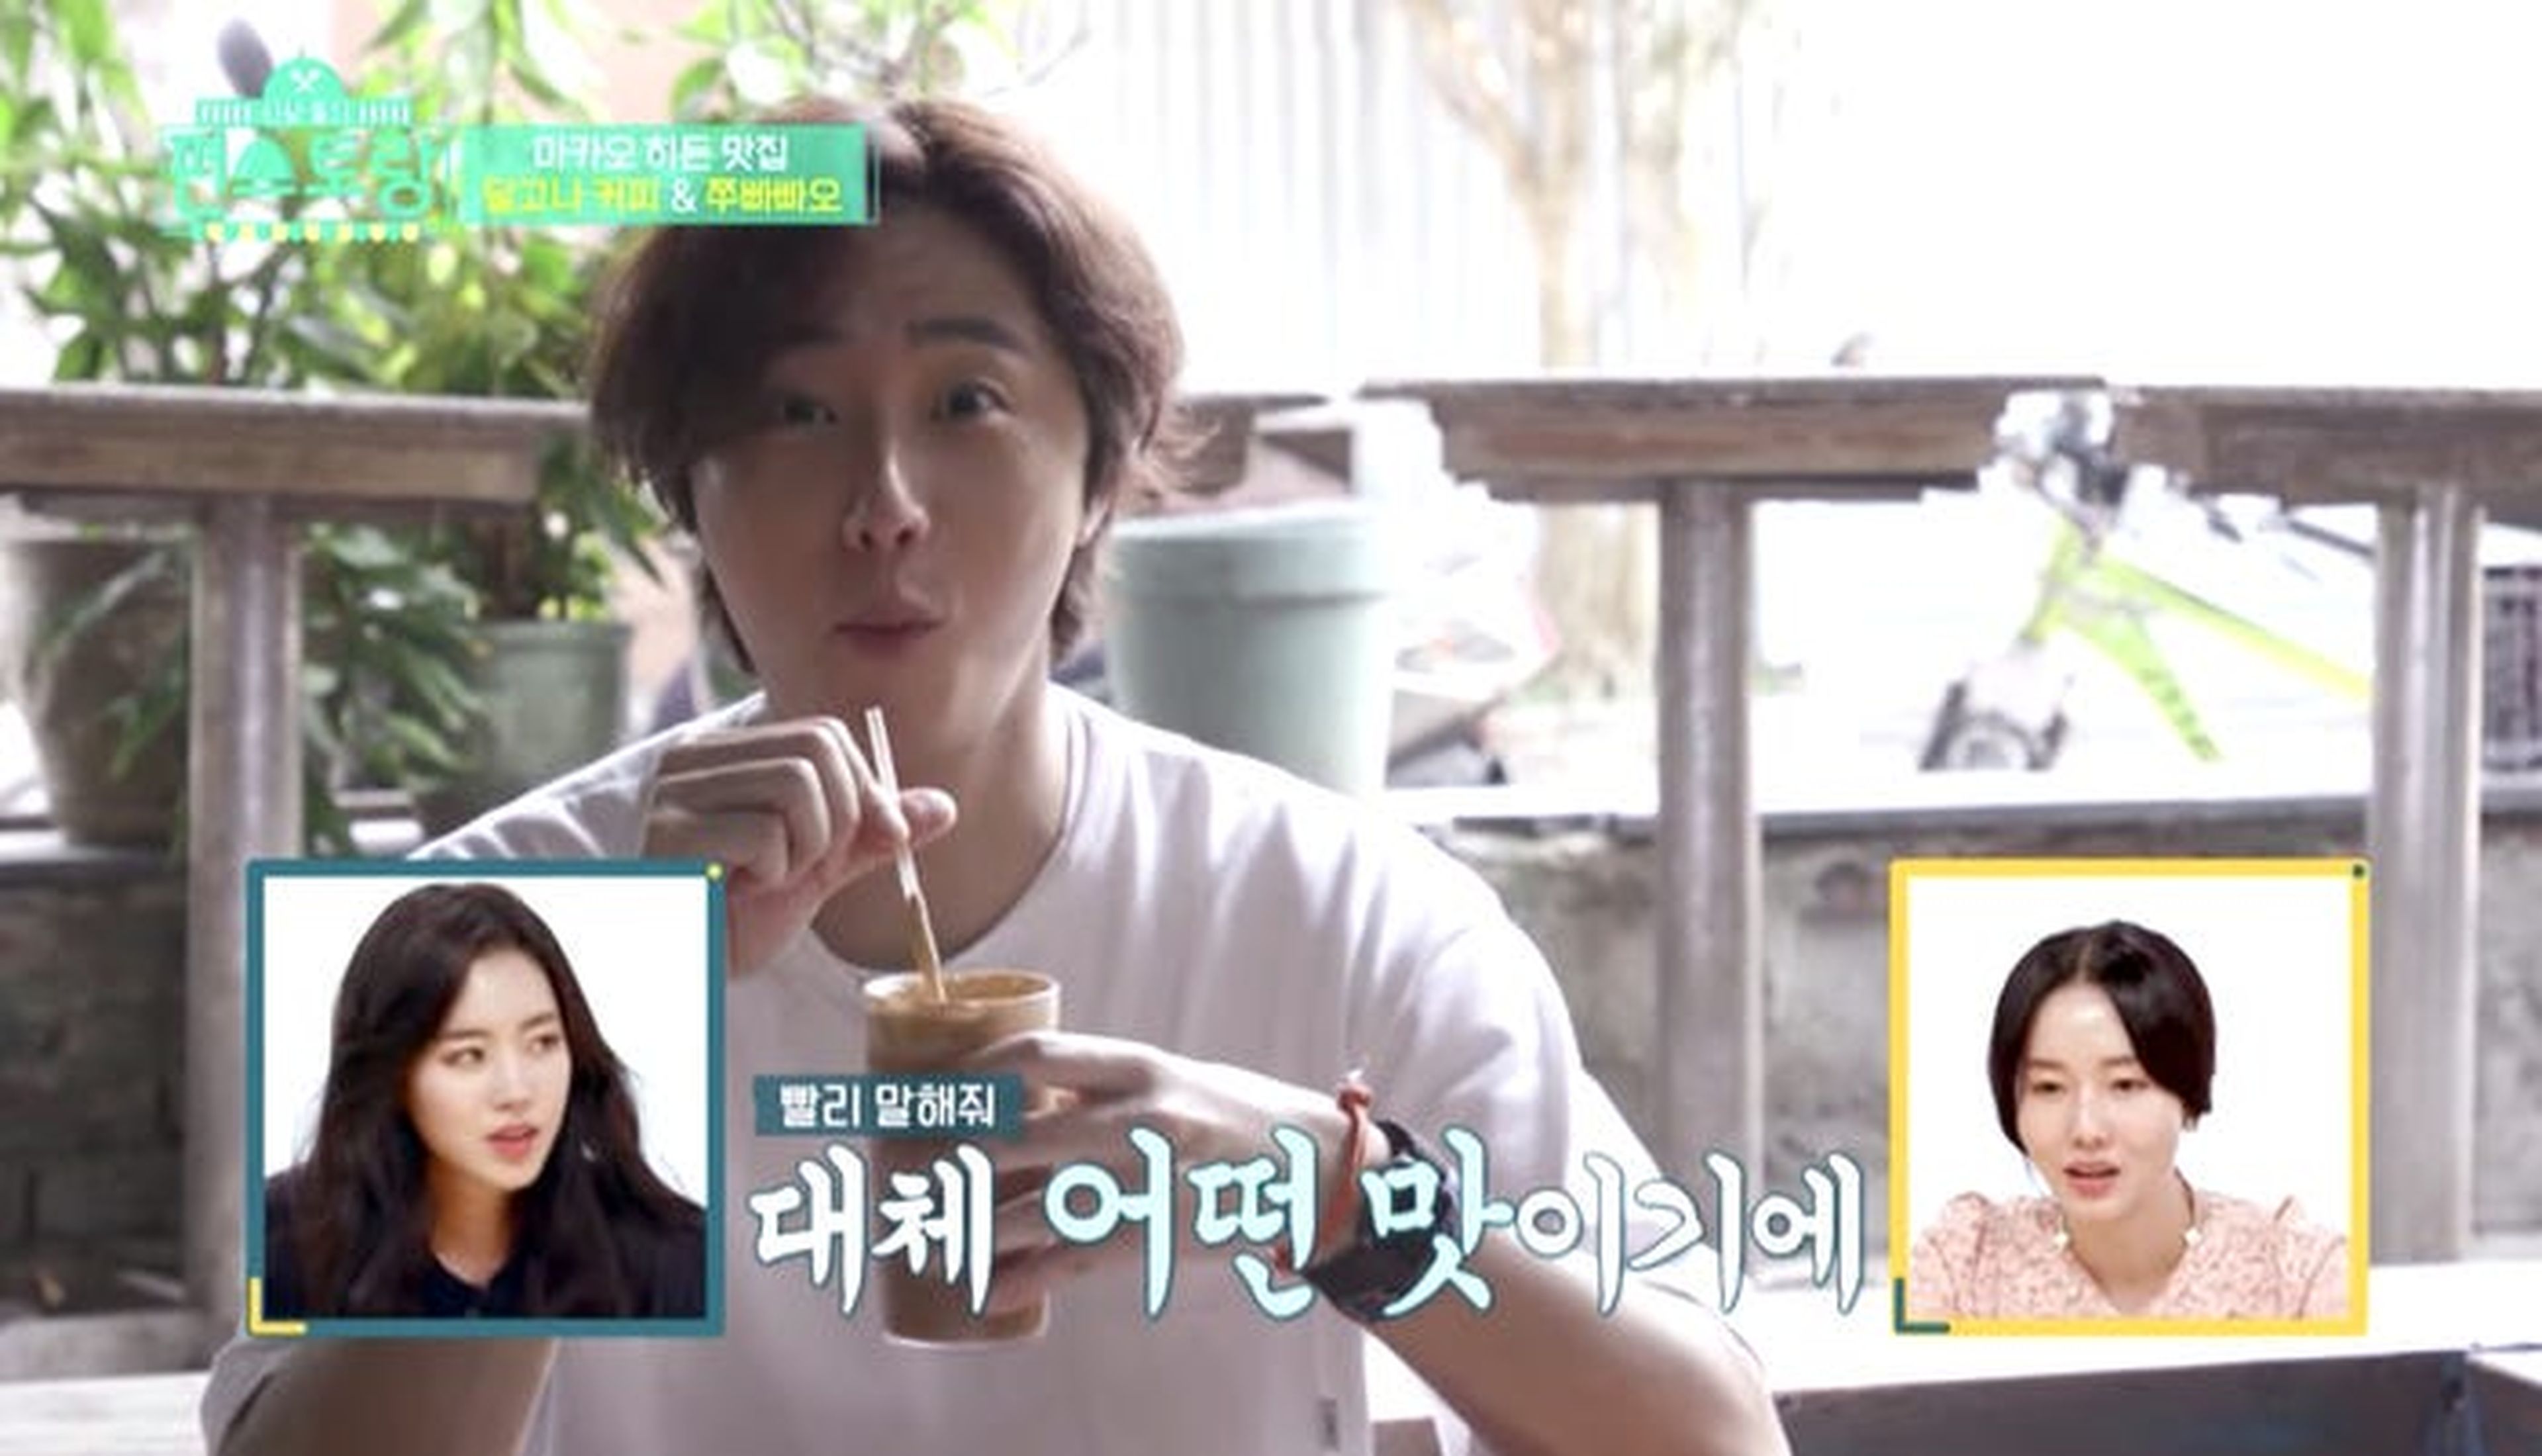 La estrella de televisión surcoreana Jung Il-woo (en la foto) le dio su nombre al café dalgona en enero.